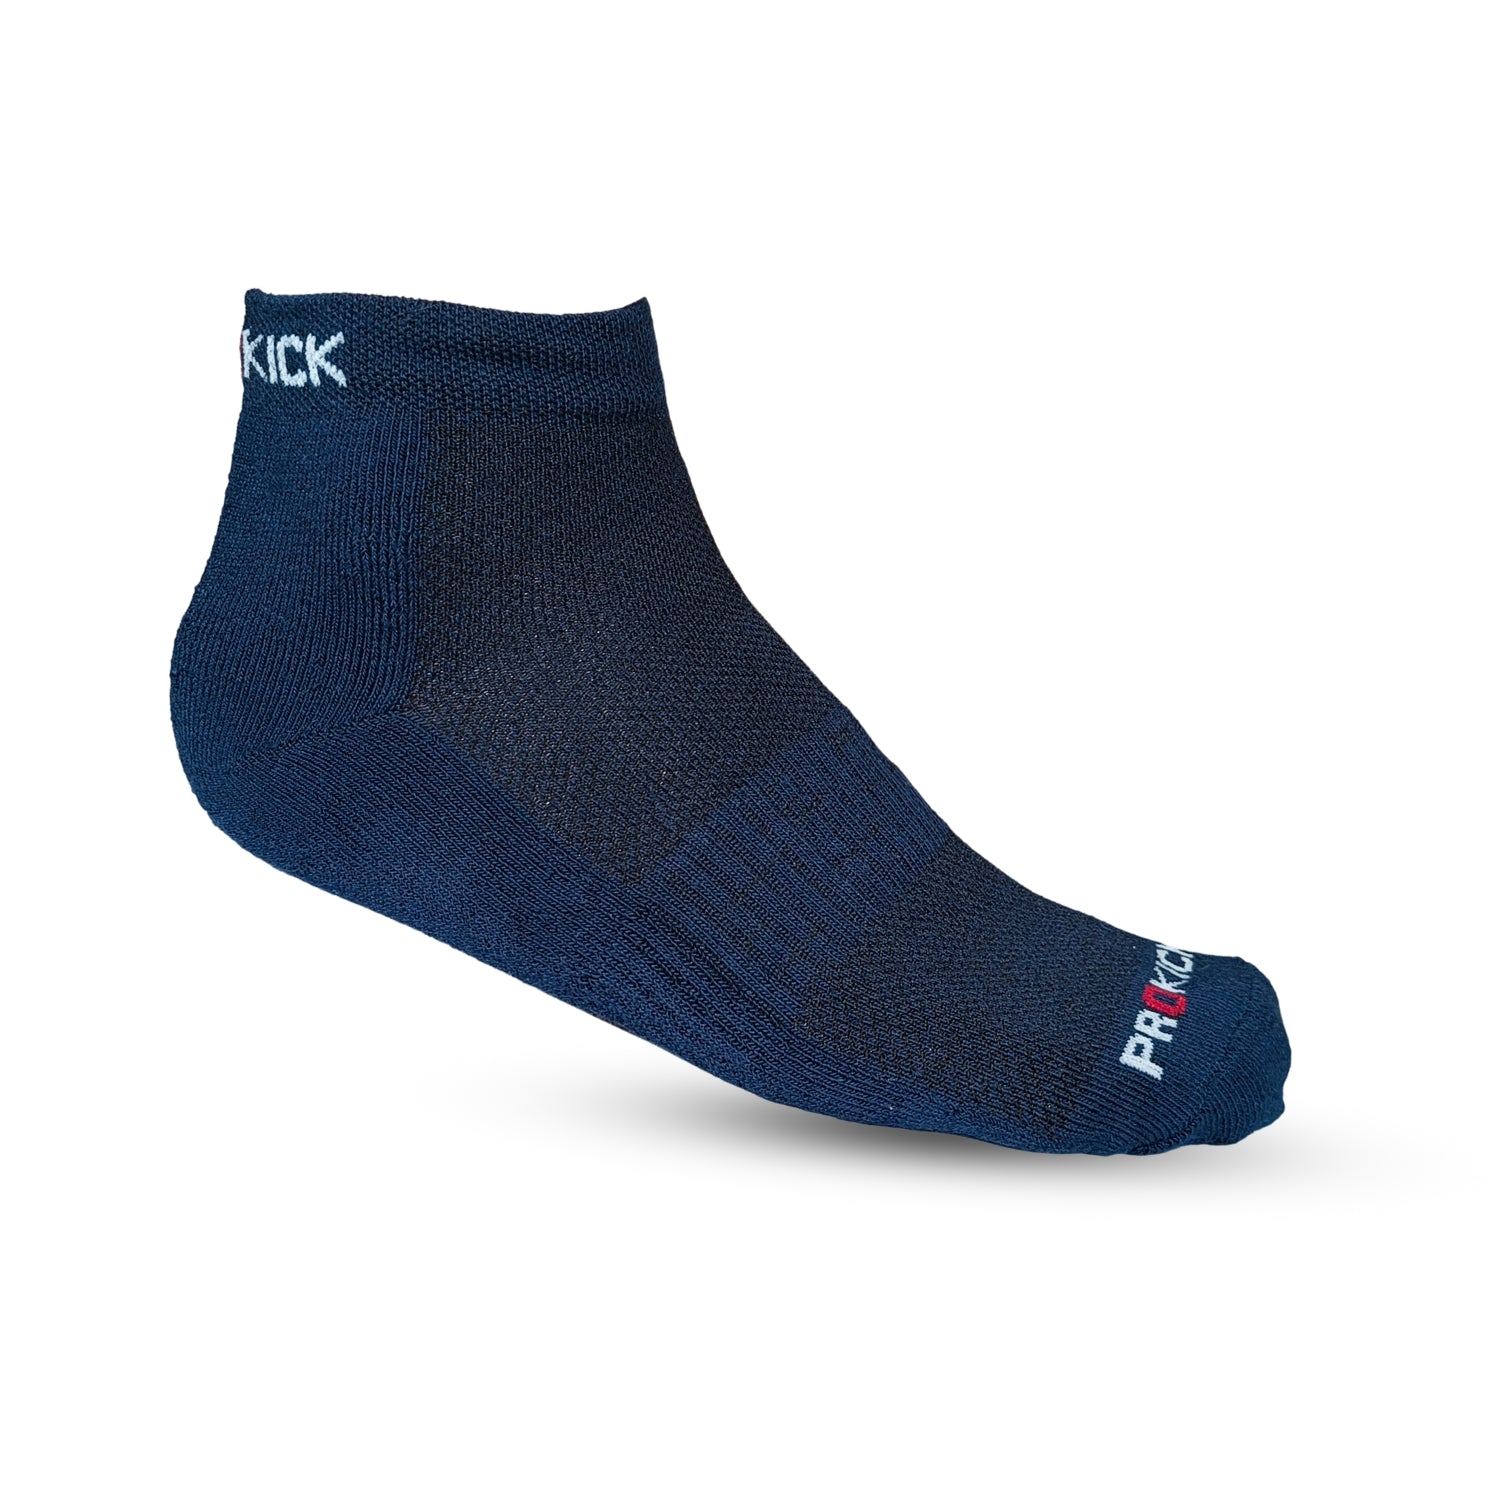 Prokick Ankle Length Socks for Men & Women, Free Size - 1 Pair - Best Price online Prokicksports.com